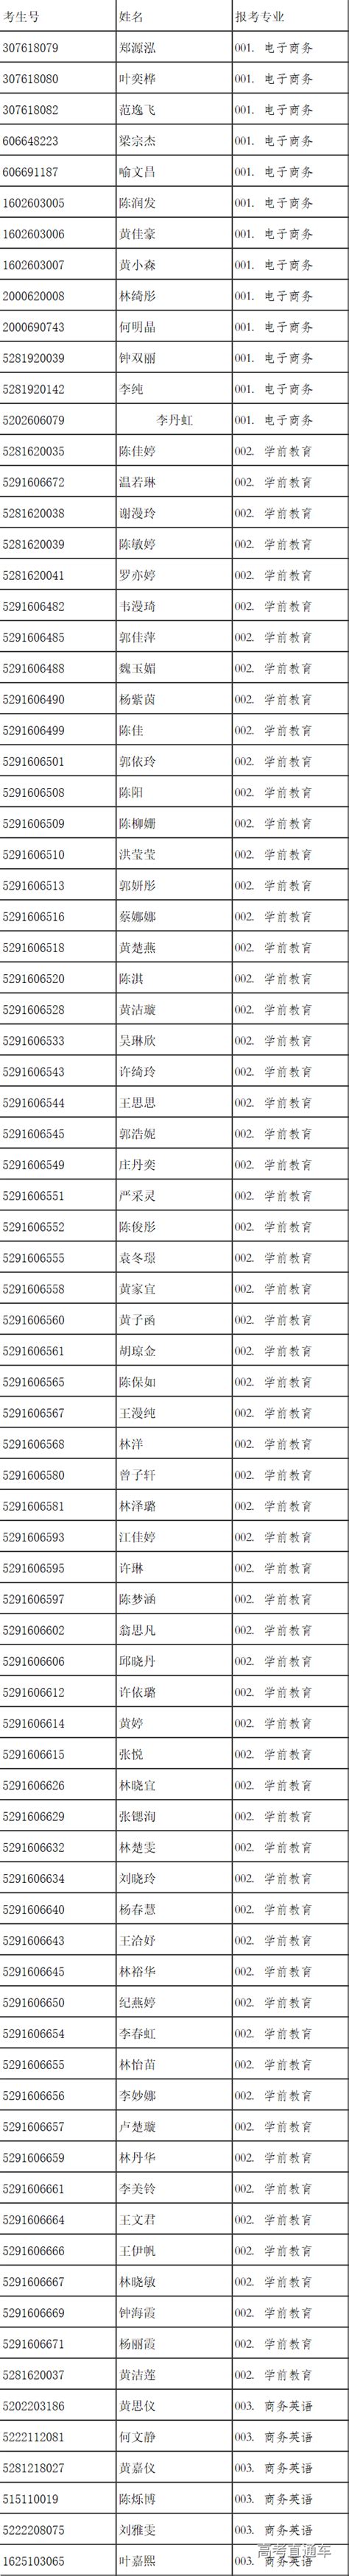 揭阳职业技术学院2019年自主招生符合报考资格考生名单公示-高考直通车